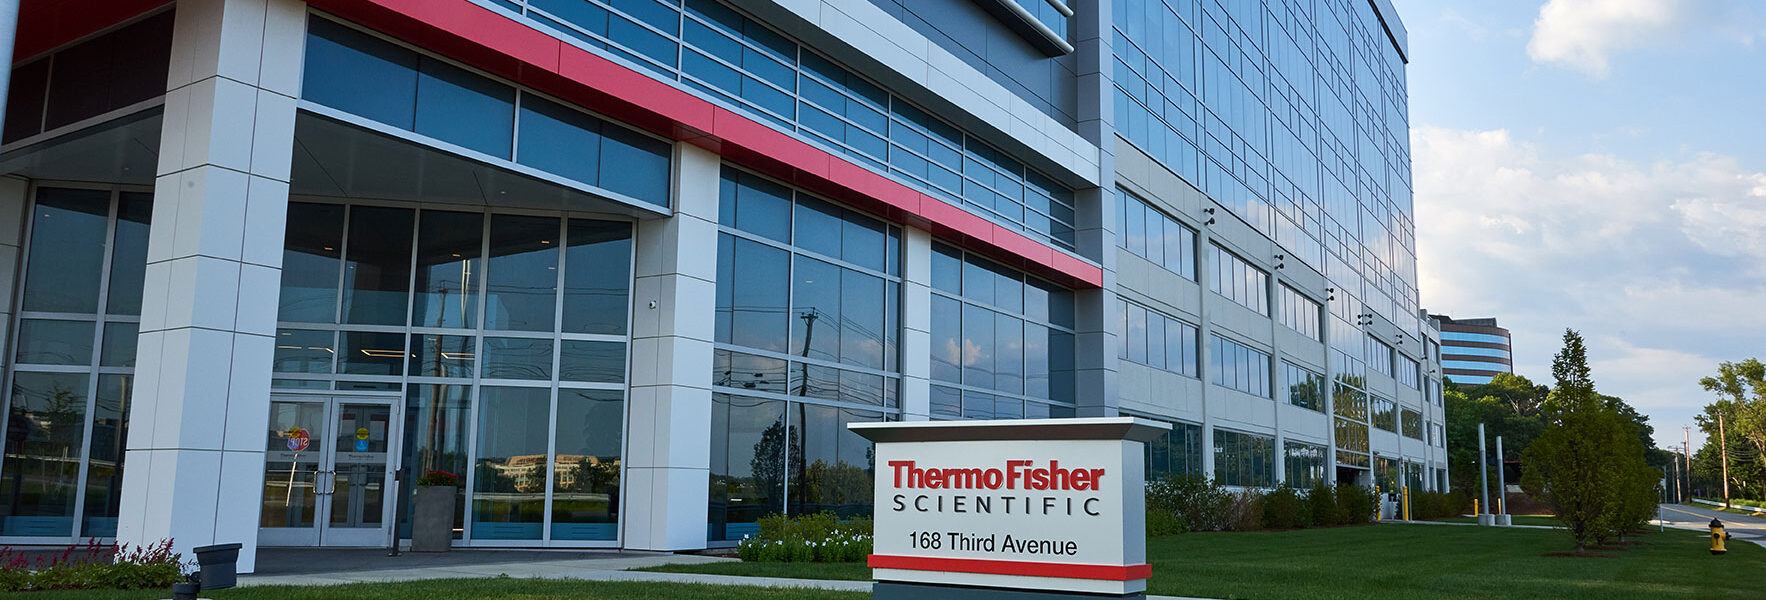 Thermo Fisher Scientific Headquarters, Waltham MA